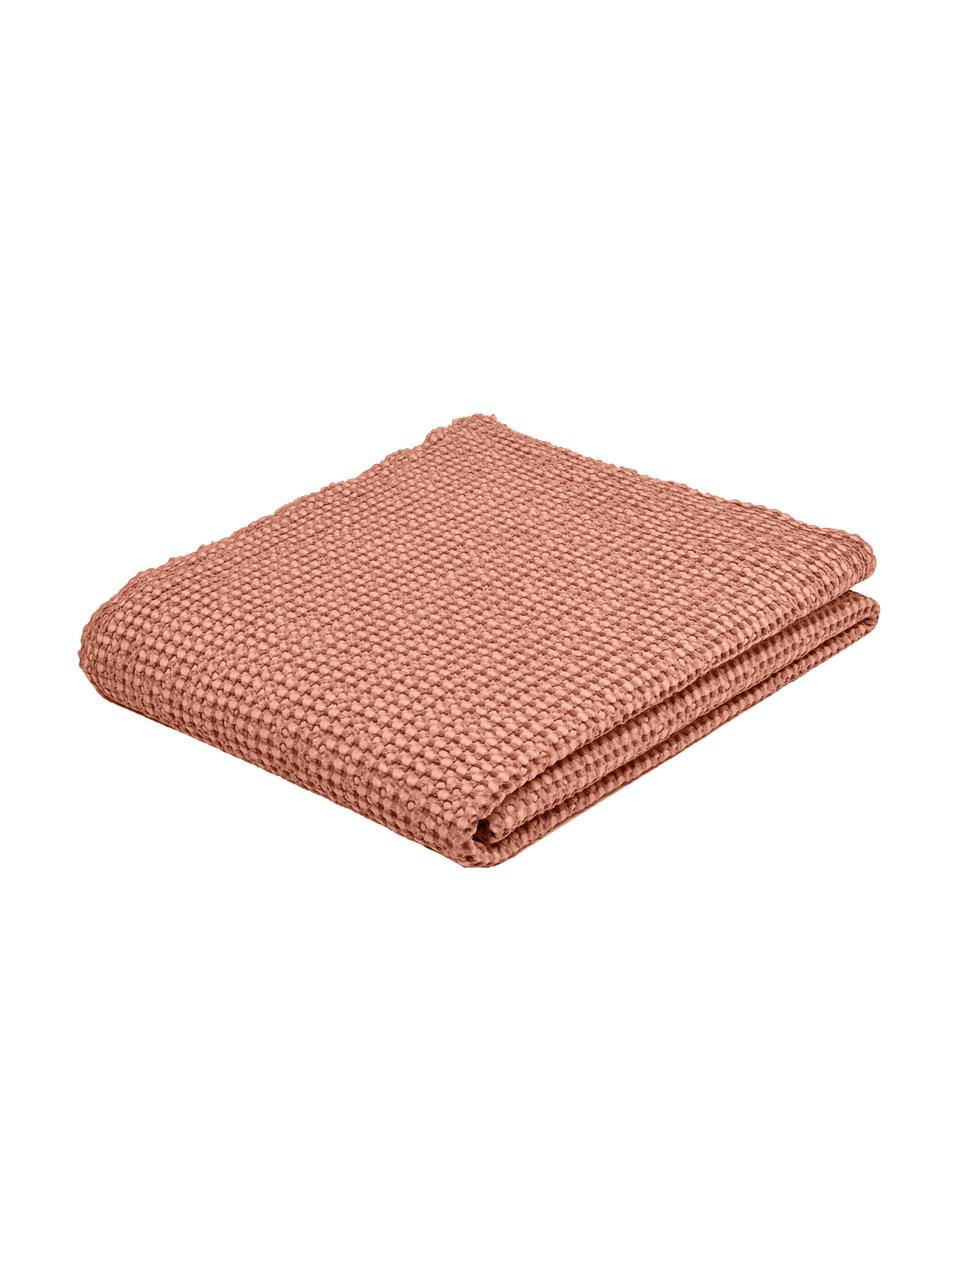 Couvre-lit coton rose à surface texturée Vigo, 100 % coton, Rose clair, larg. 220 x long. 240 cm (pour lits jusqu'à 180 x 200)